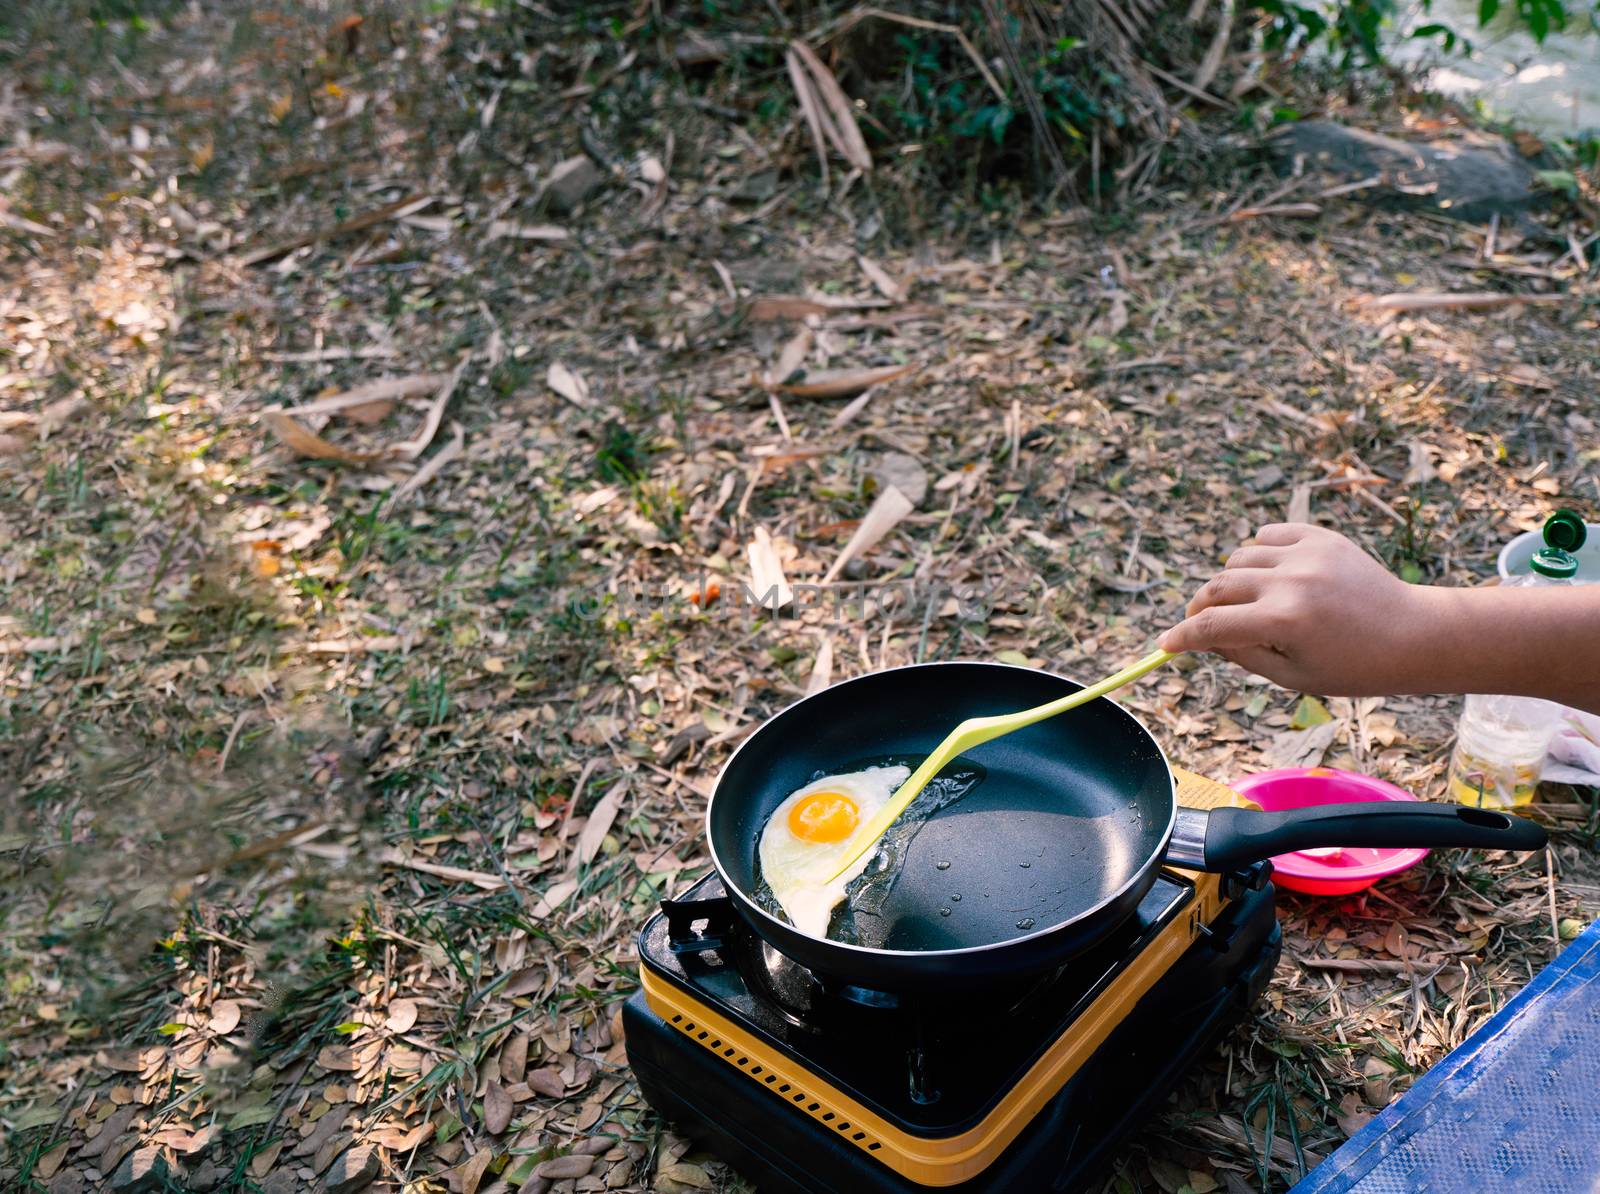 traveller cook omelet breakfast between camping